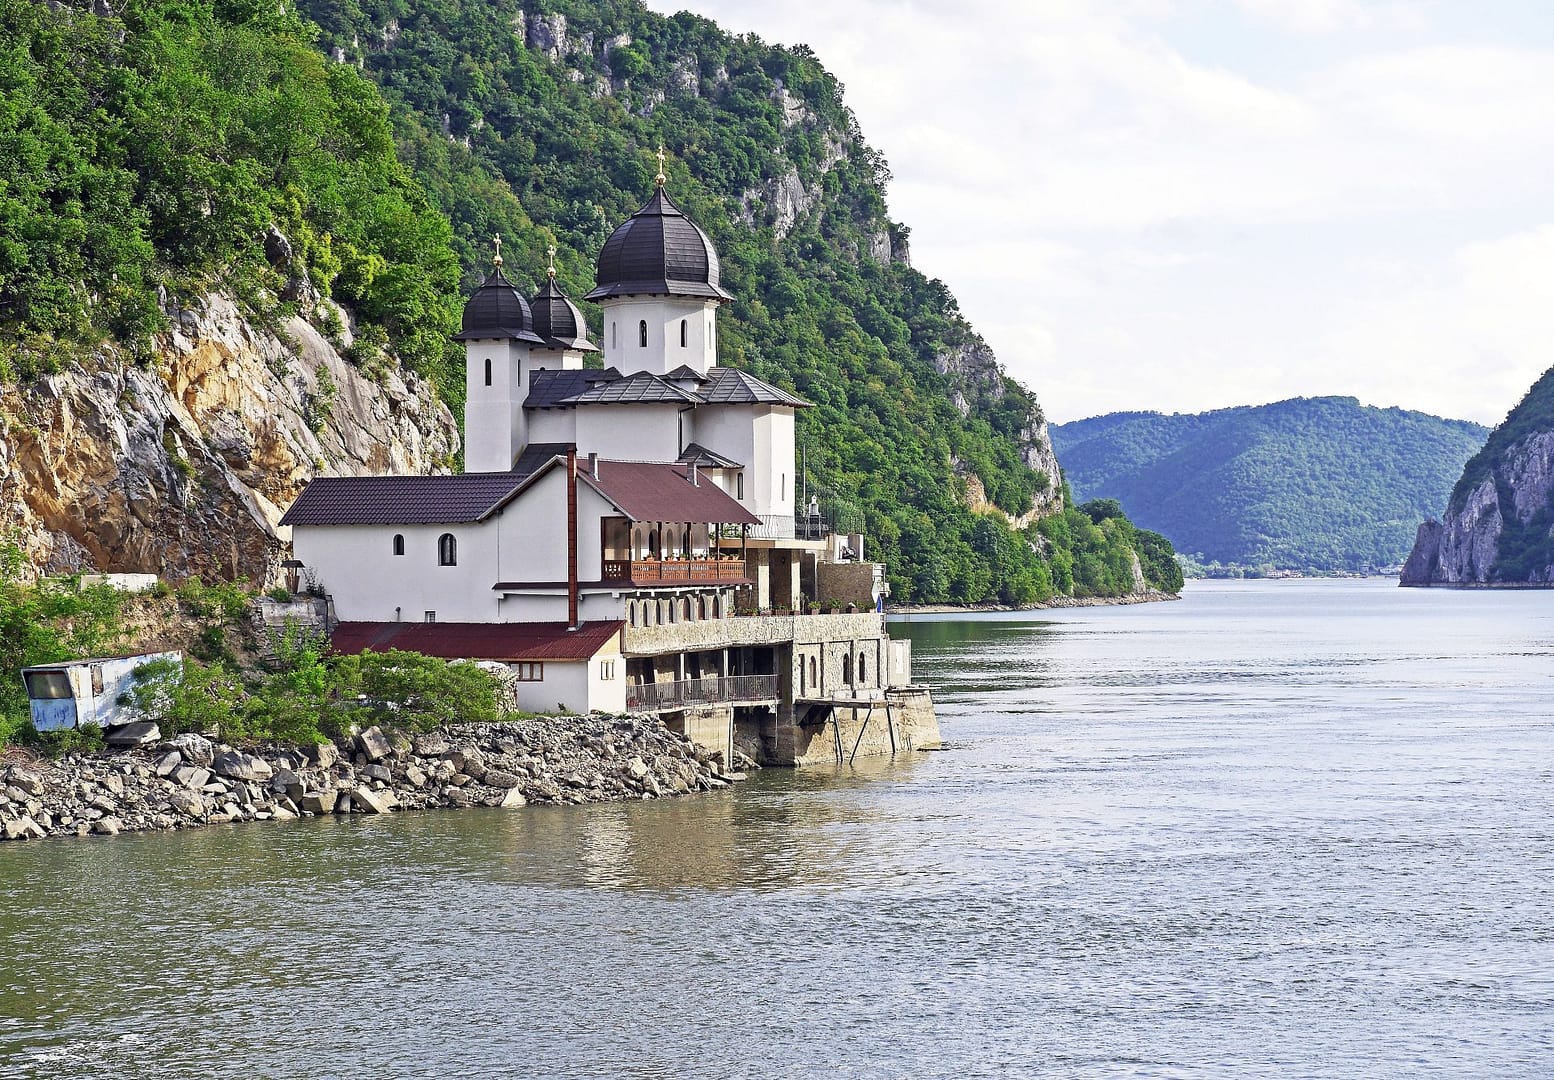 Donau romantische strasse